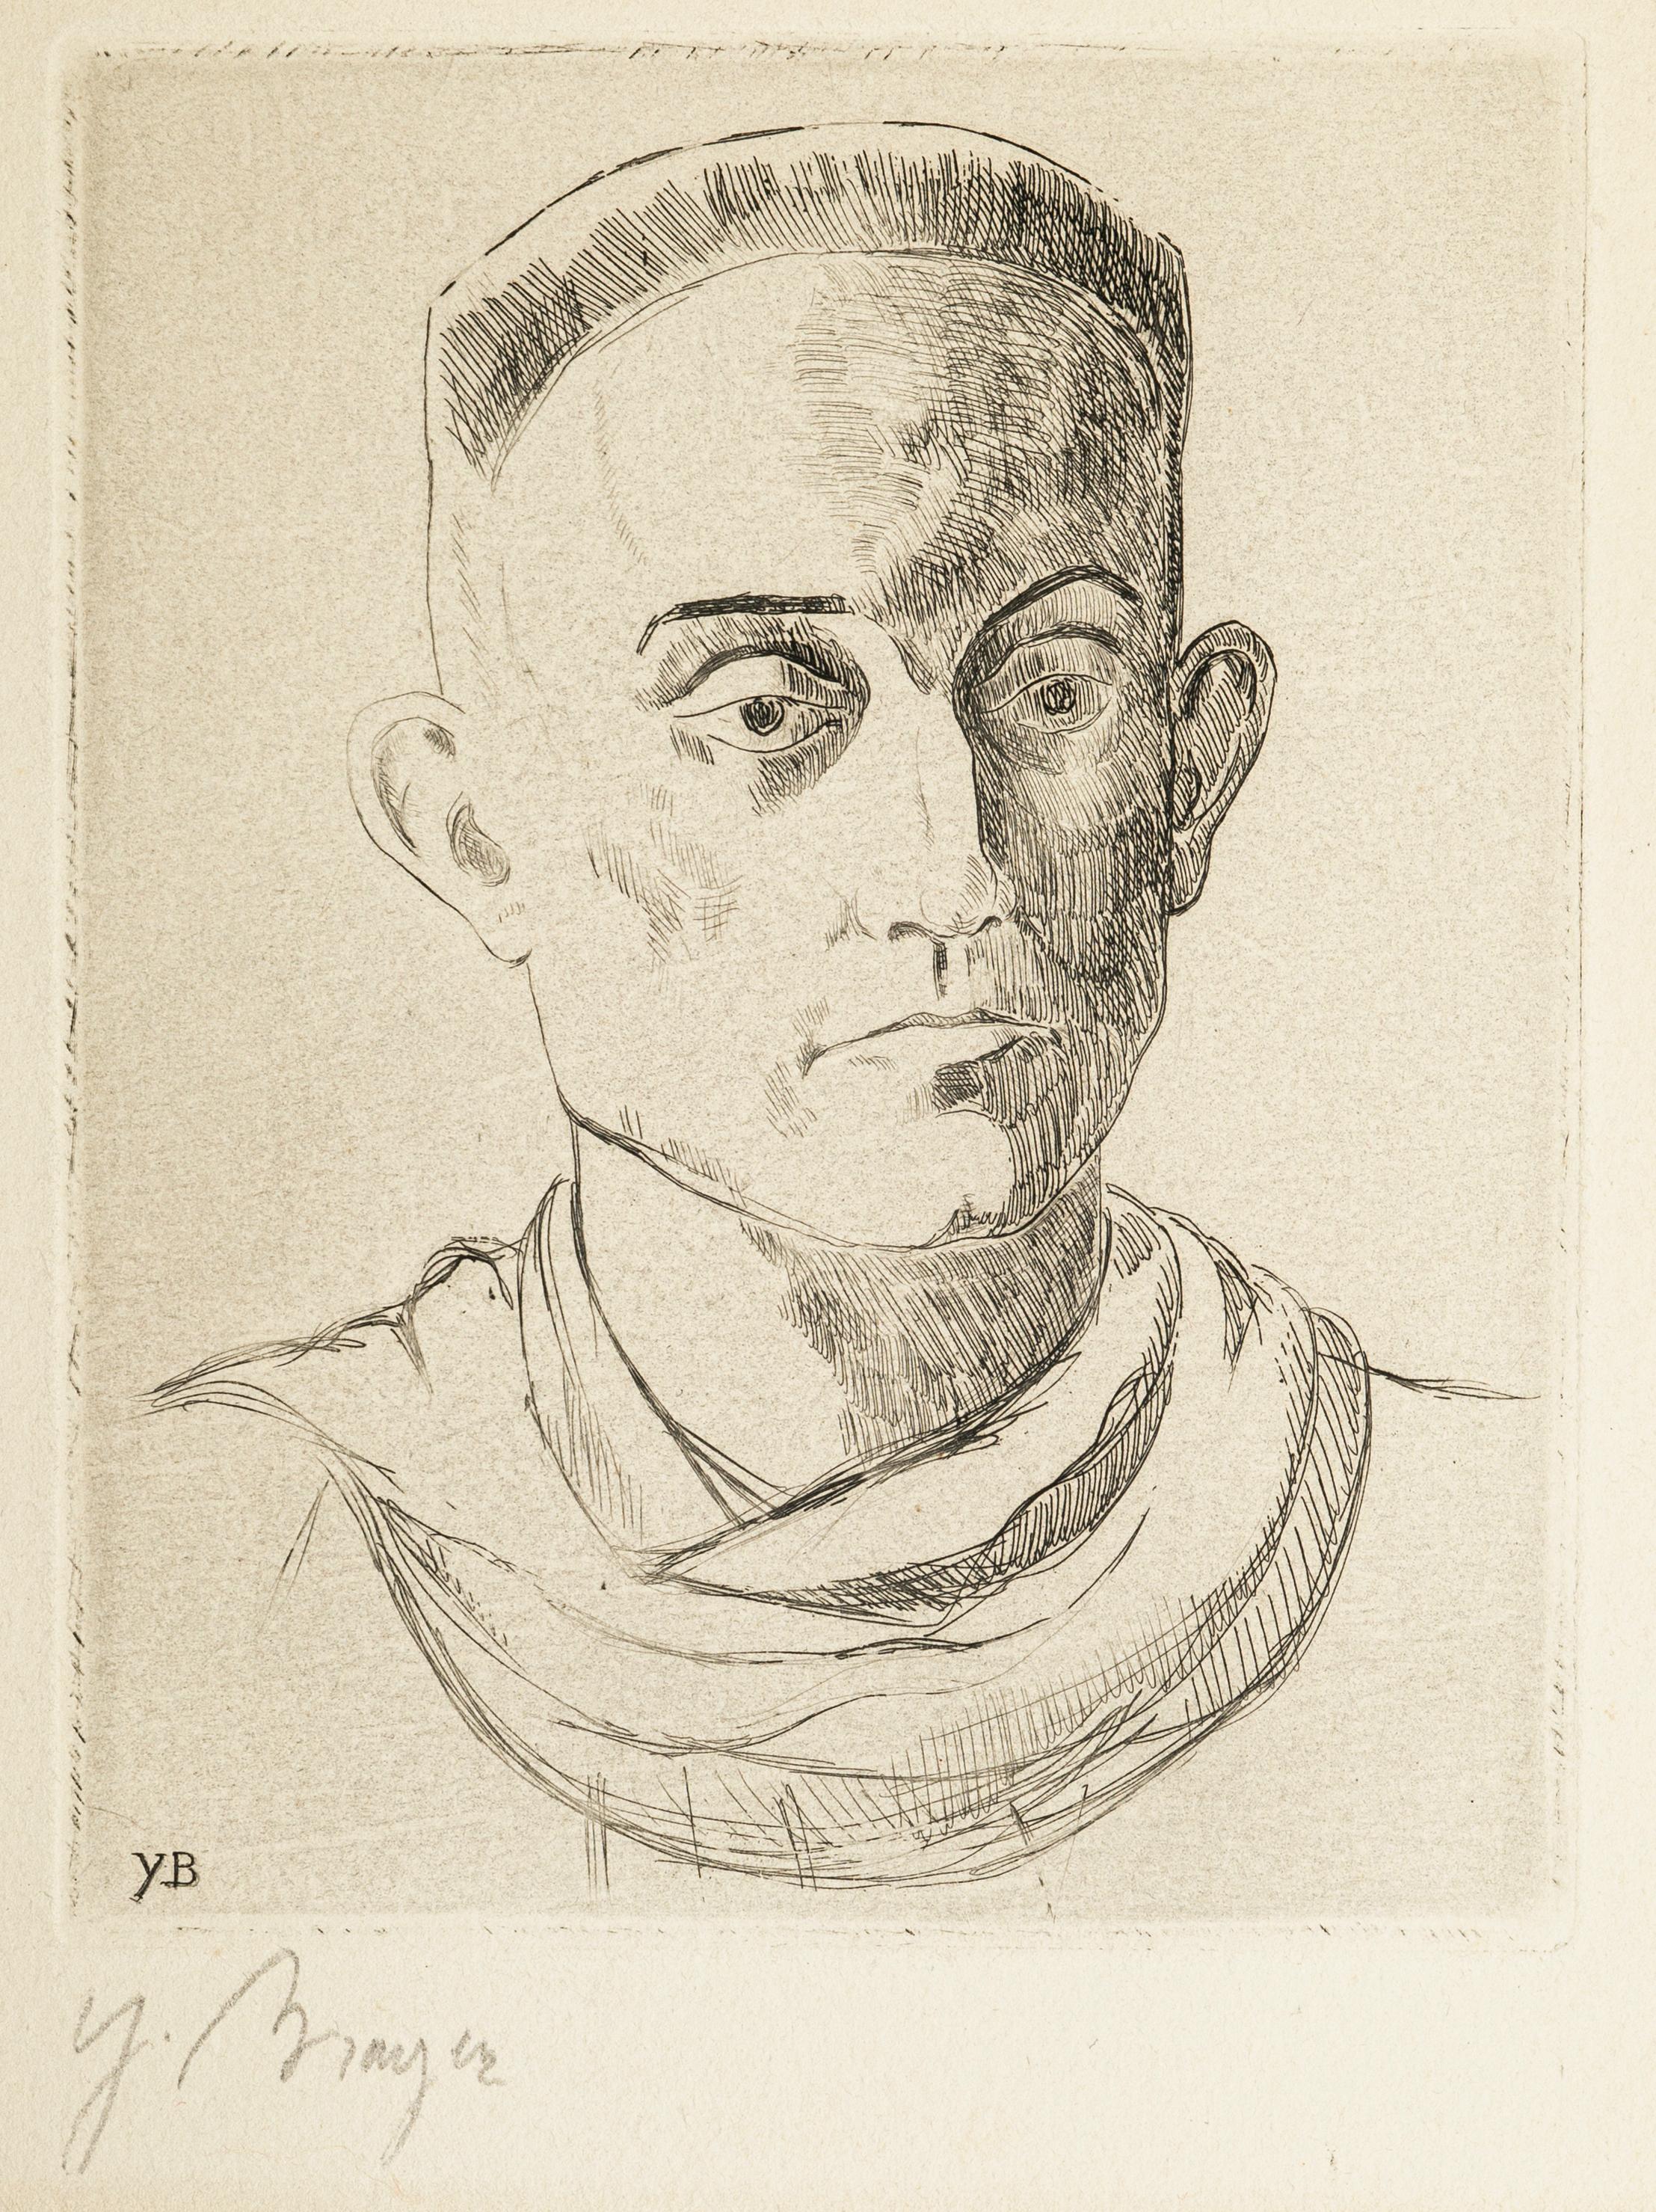 Dimensions de l'image : 16 x 12,5 cm.

Portrait d'Henry de Montherlant est une lithographie originale en noir et blanc réalisée par Yves Brayer (1907-1990) dans la seconde moitié du 20e siècle.

L'œuvre d'art représente un portrait de l'essayiste,